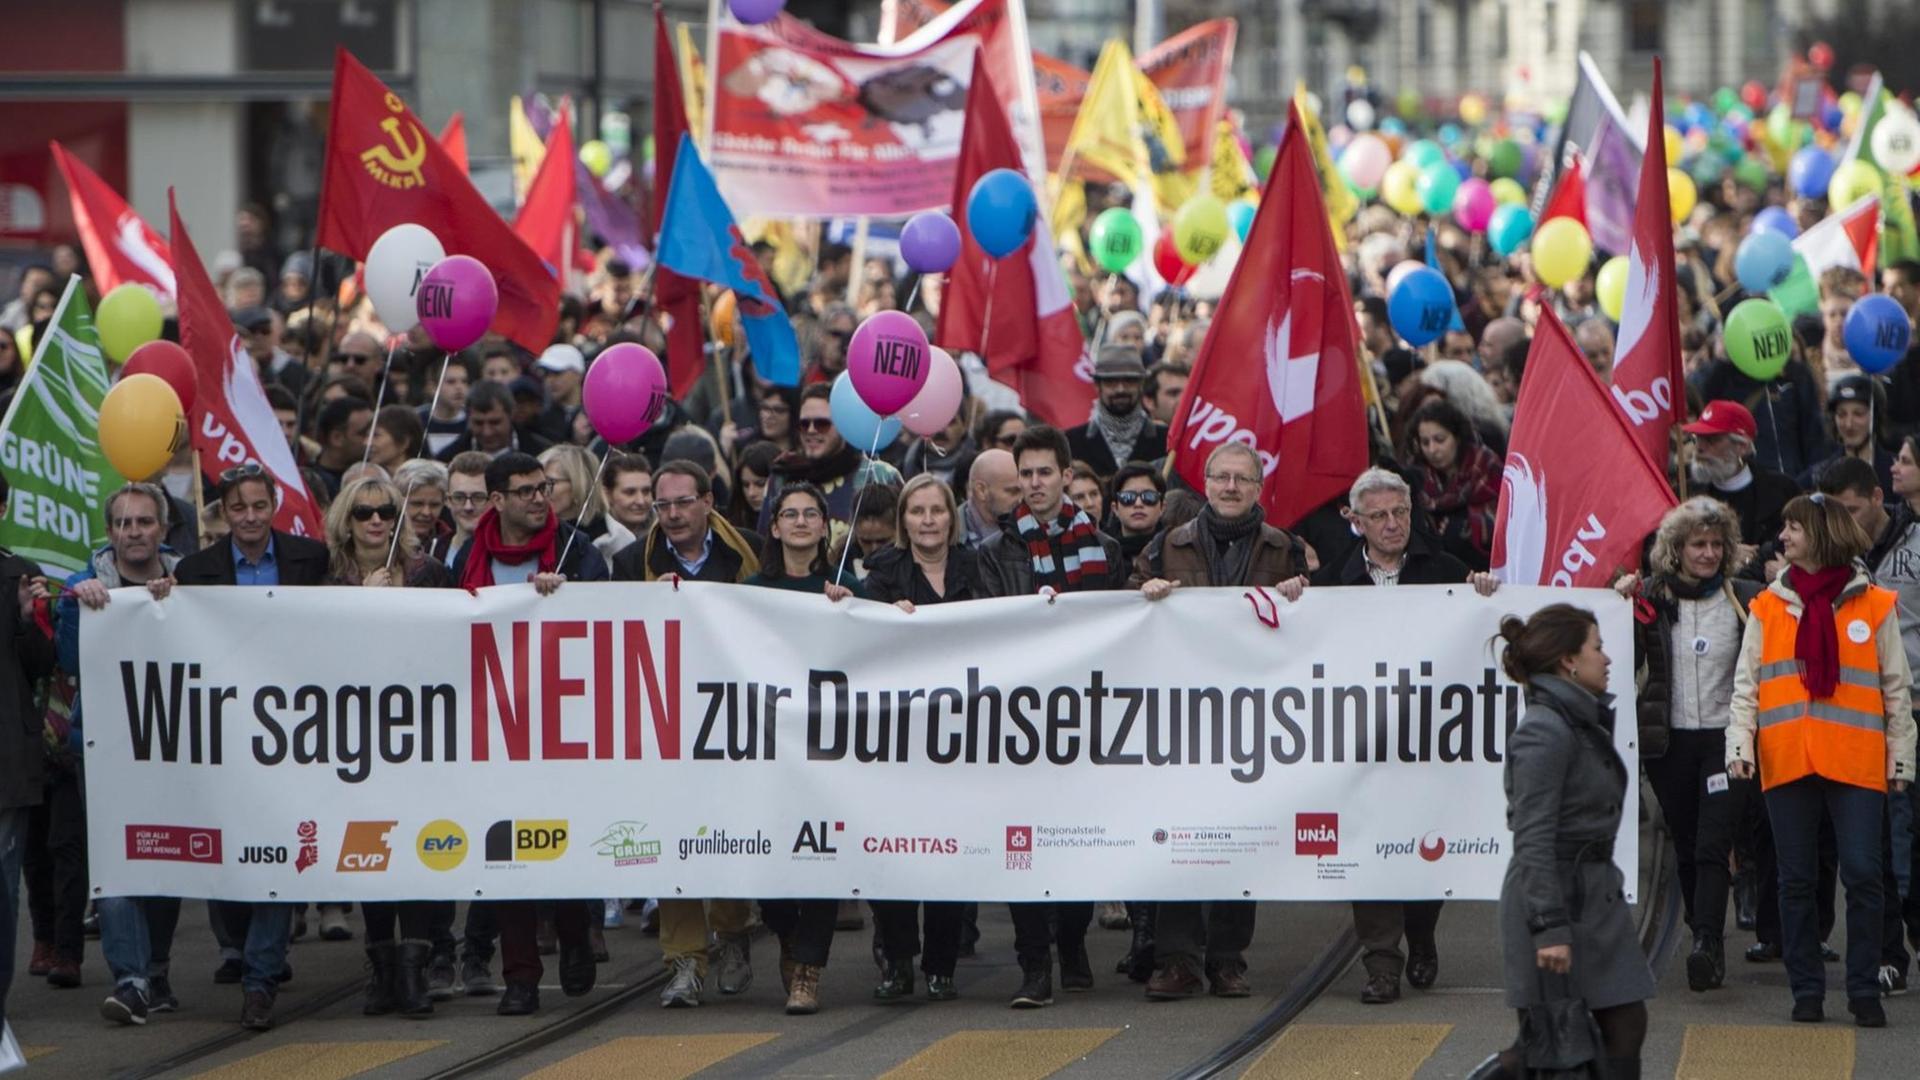 "Wir sagen Nein zur Duchsetzungsinitiaitve" - Demonstranten in Zürich (22.02.2016)